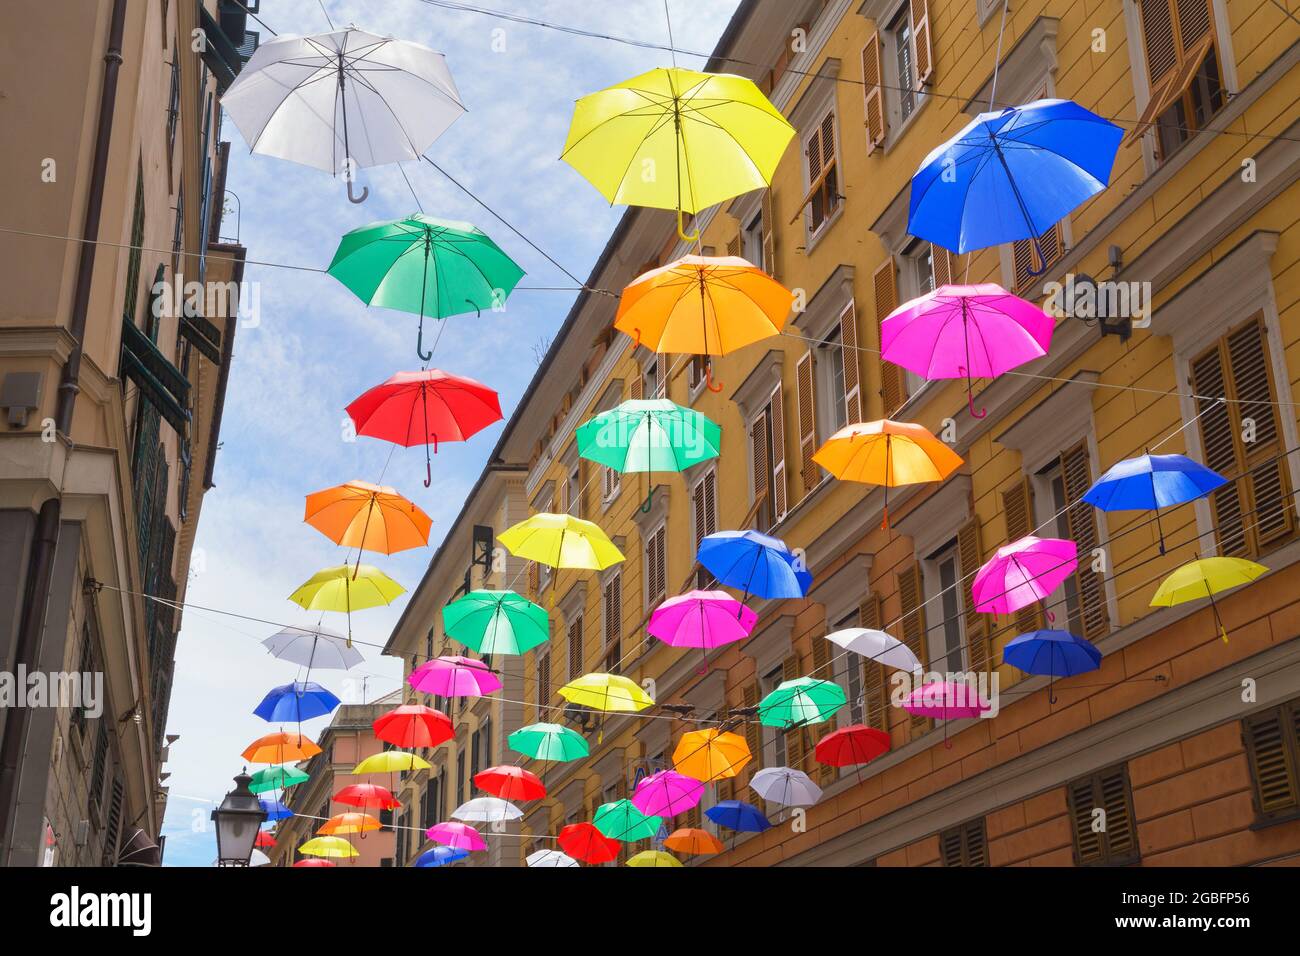 Ombrelli galleggianti dai colori vivaci, Genova, Liguria, Italia Foto stock  - Alamy